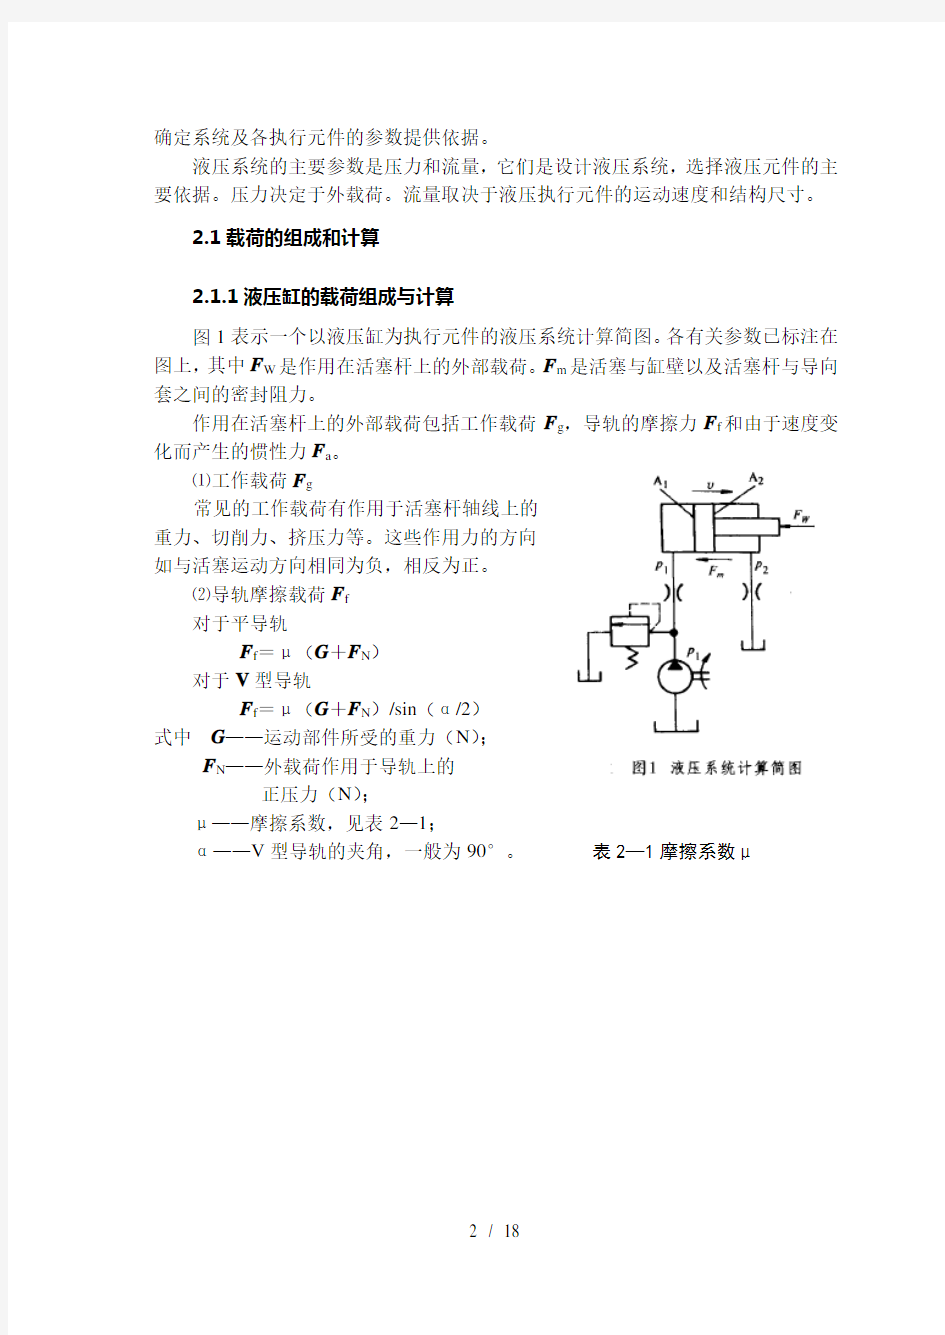 液压系统设计方案书方法